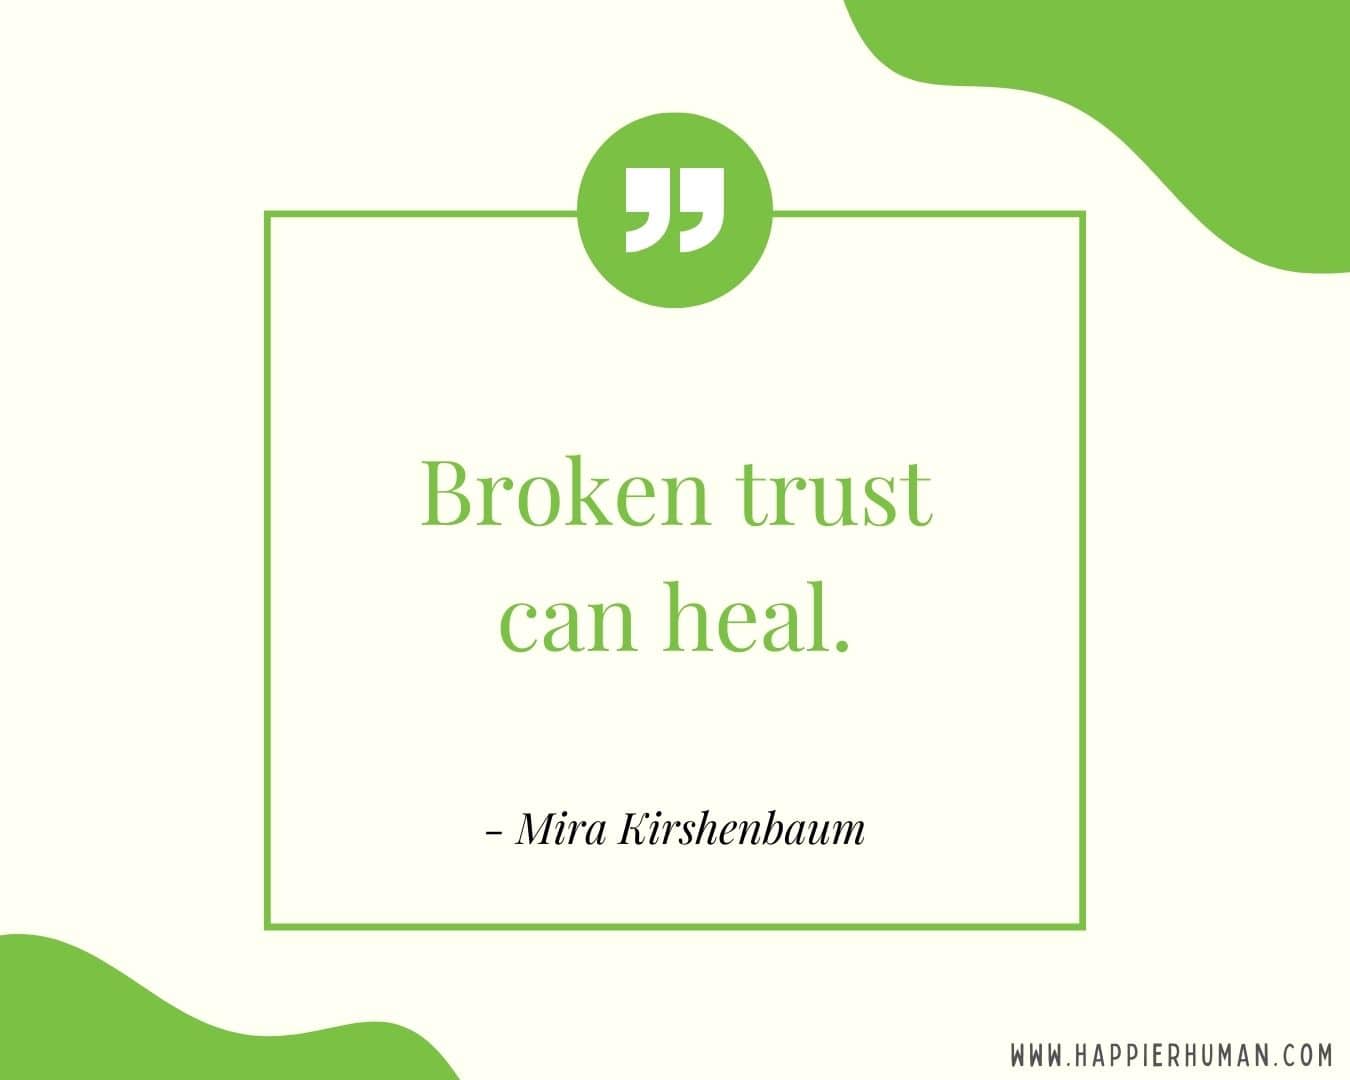 Broken Trust Quotes - “Broken trust can heal.” - Mira Kirshenbaum